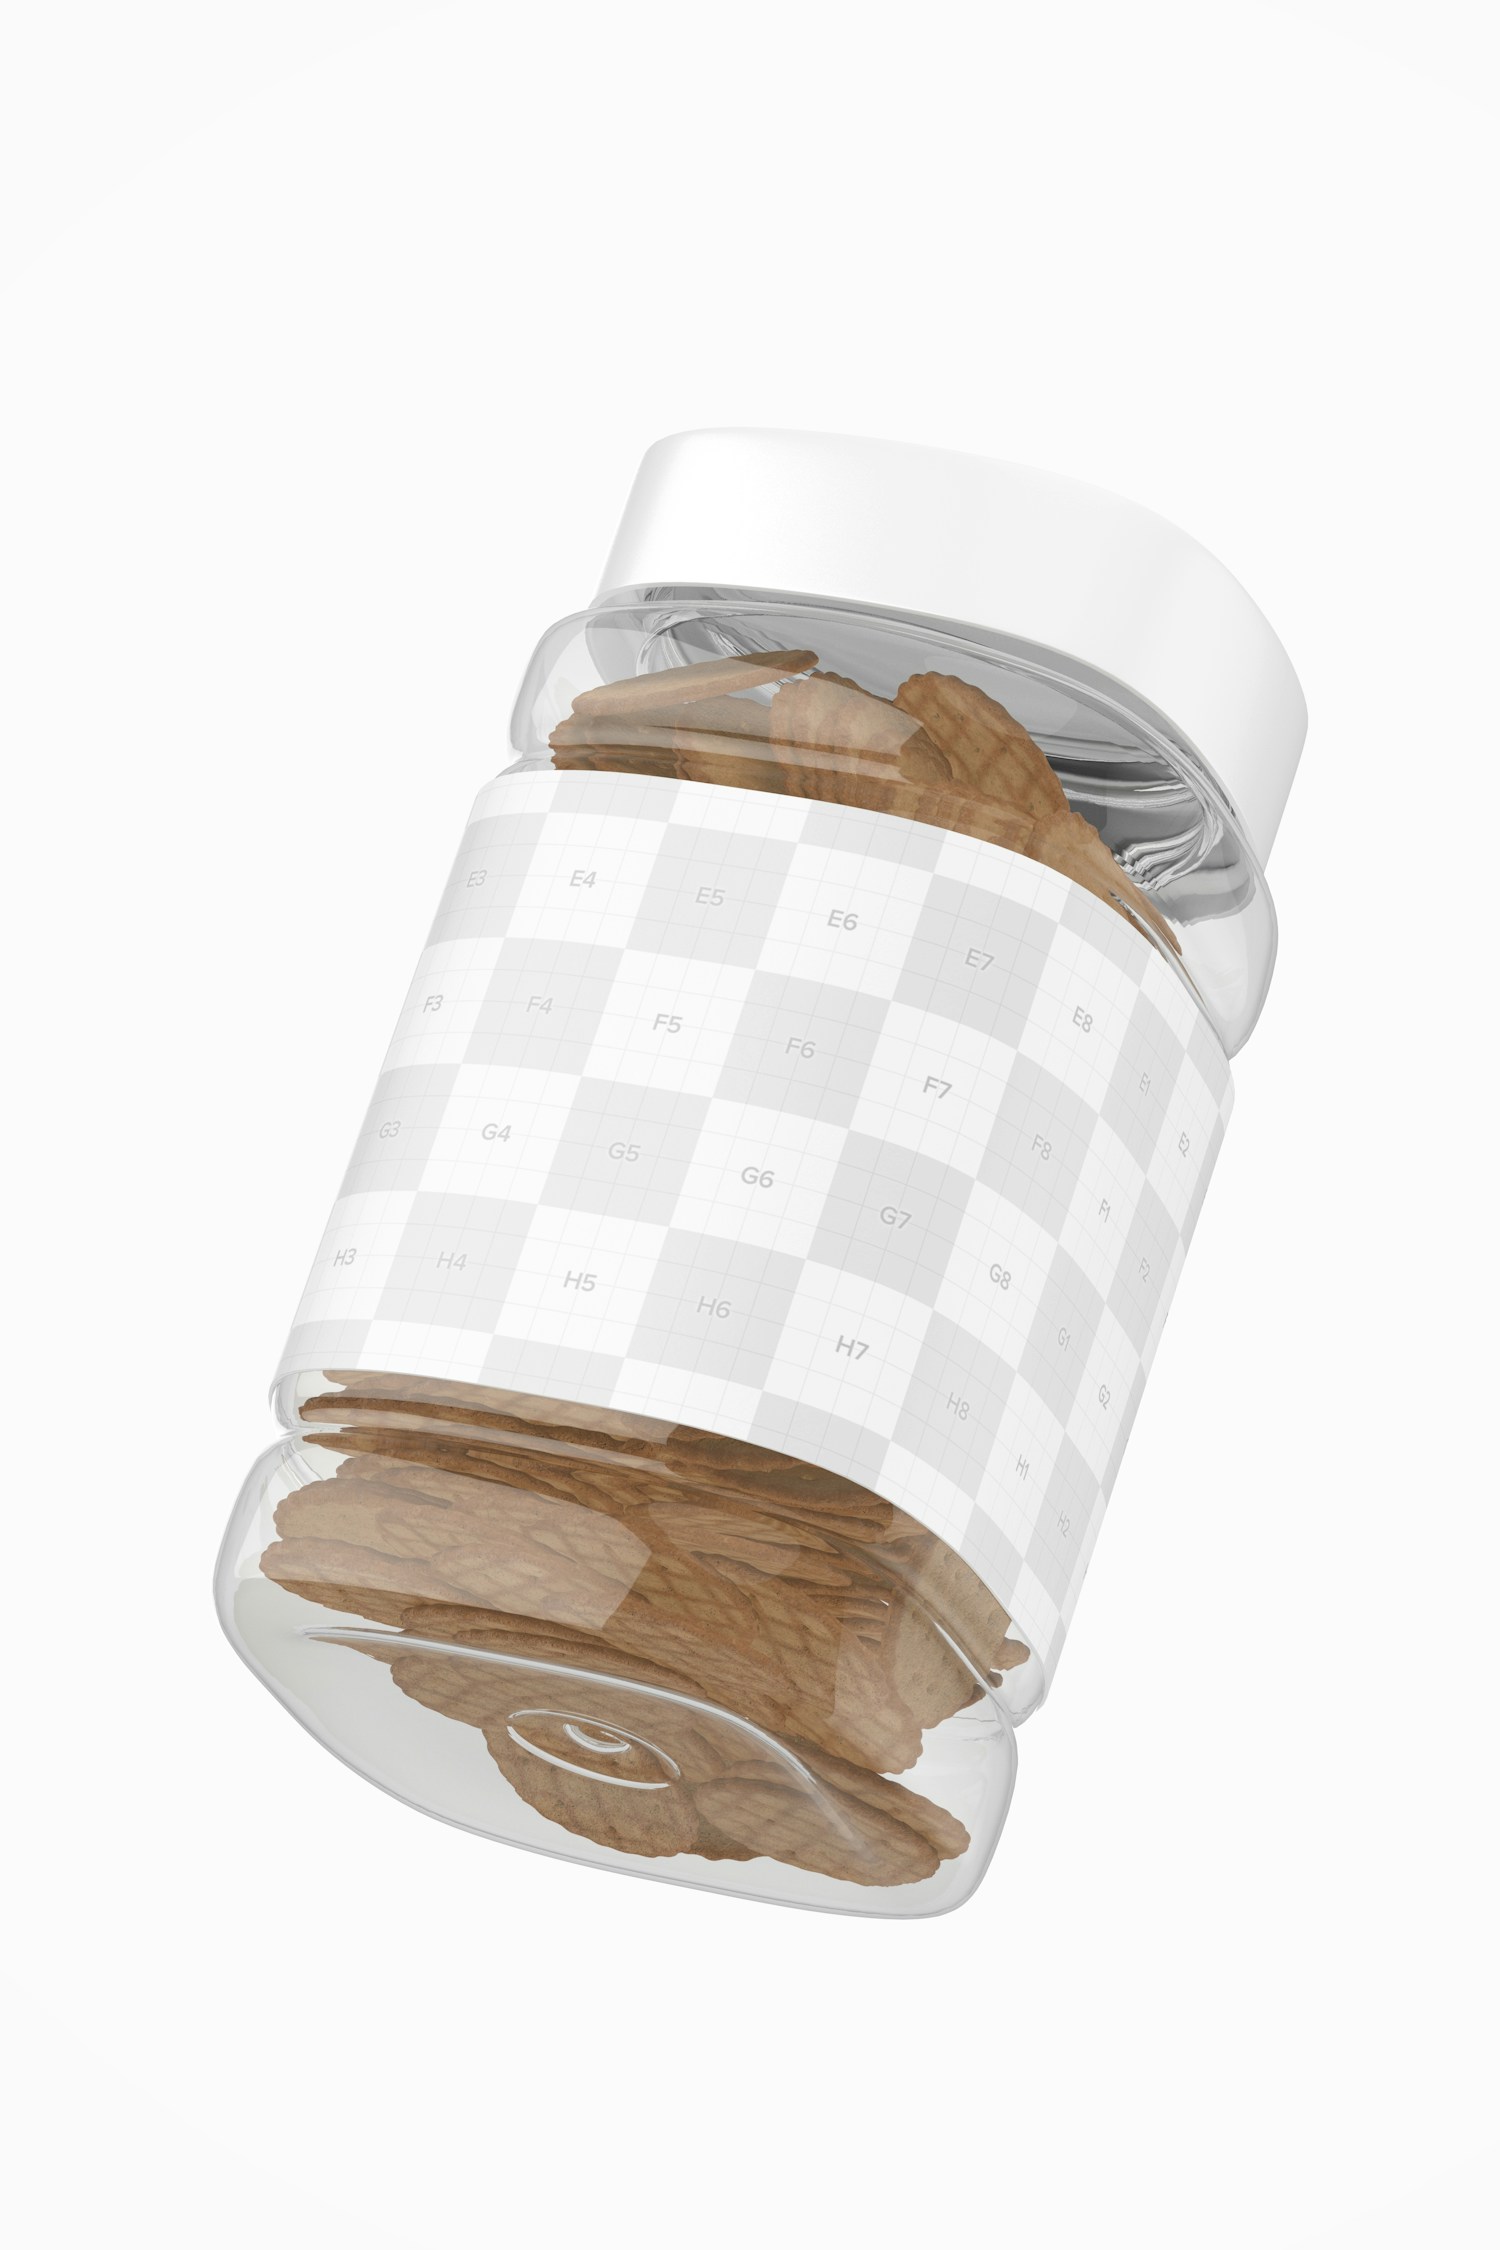 Plastic Cookie Jar Mockup, Floating